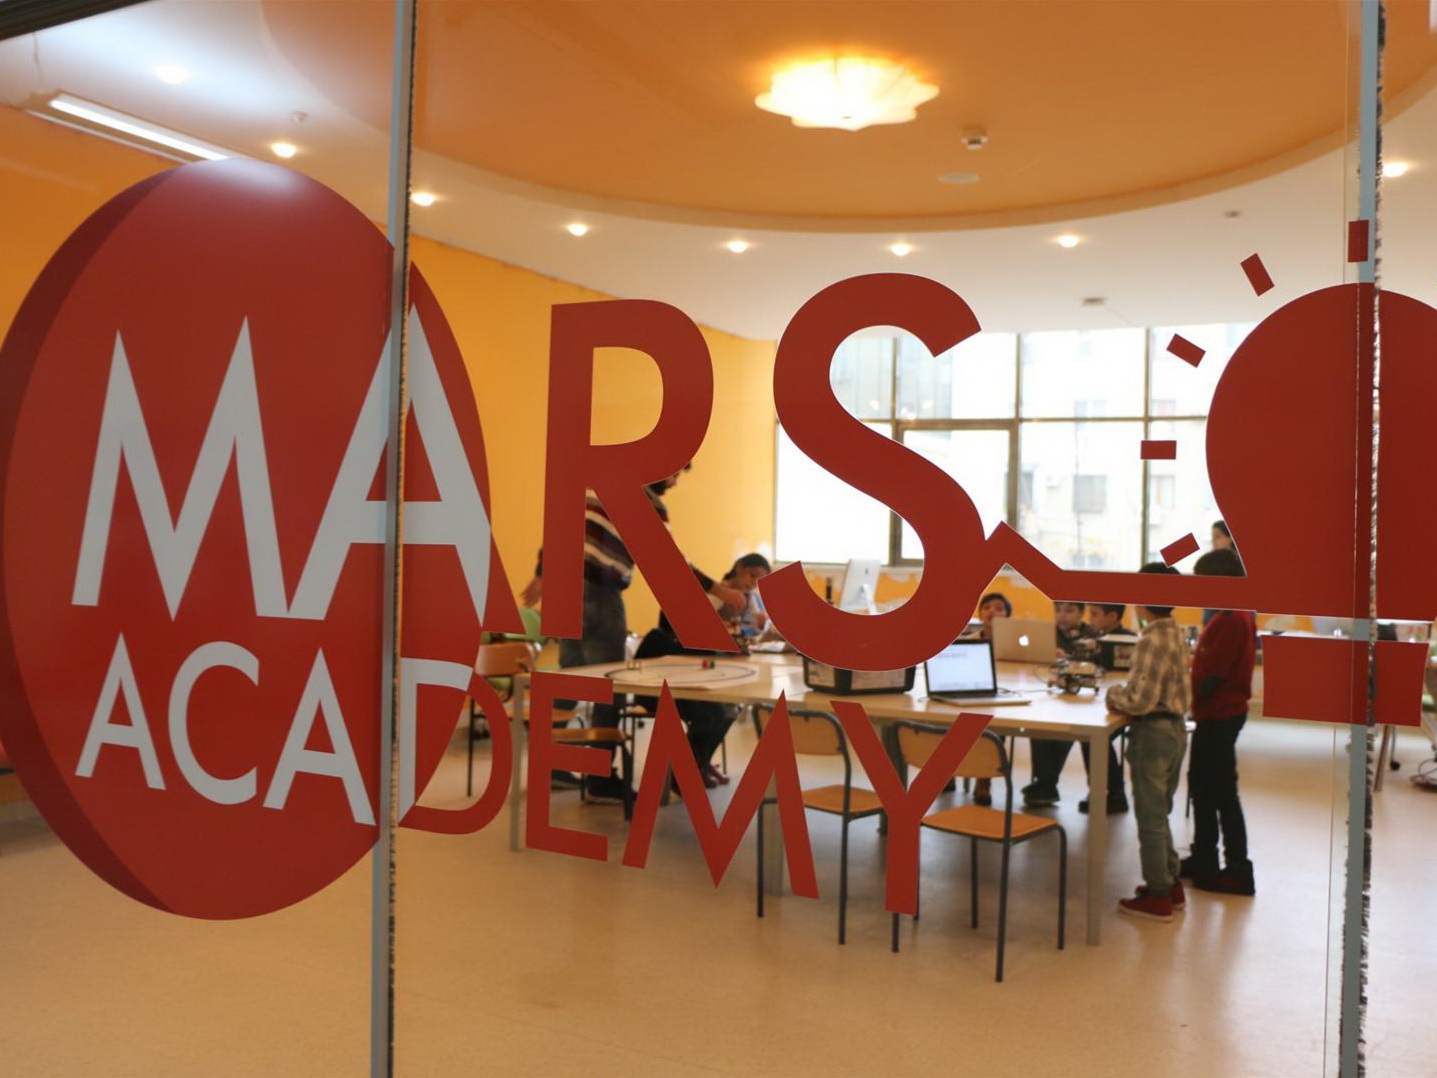 Mars Academy – здесь дети могут пробовать себя в разных технологических областях, становясь профессионалами будущего – ФОТО – ВИДЕО